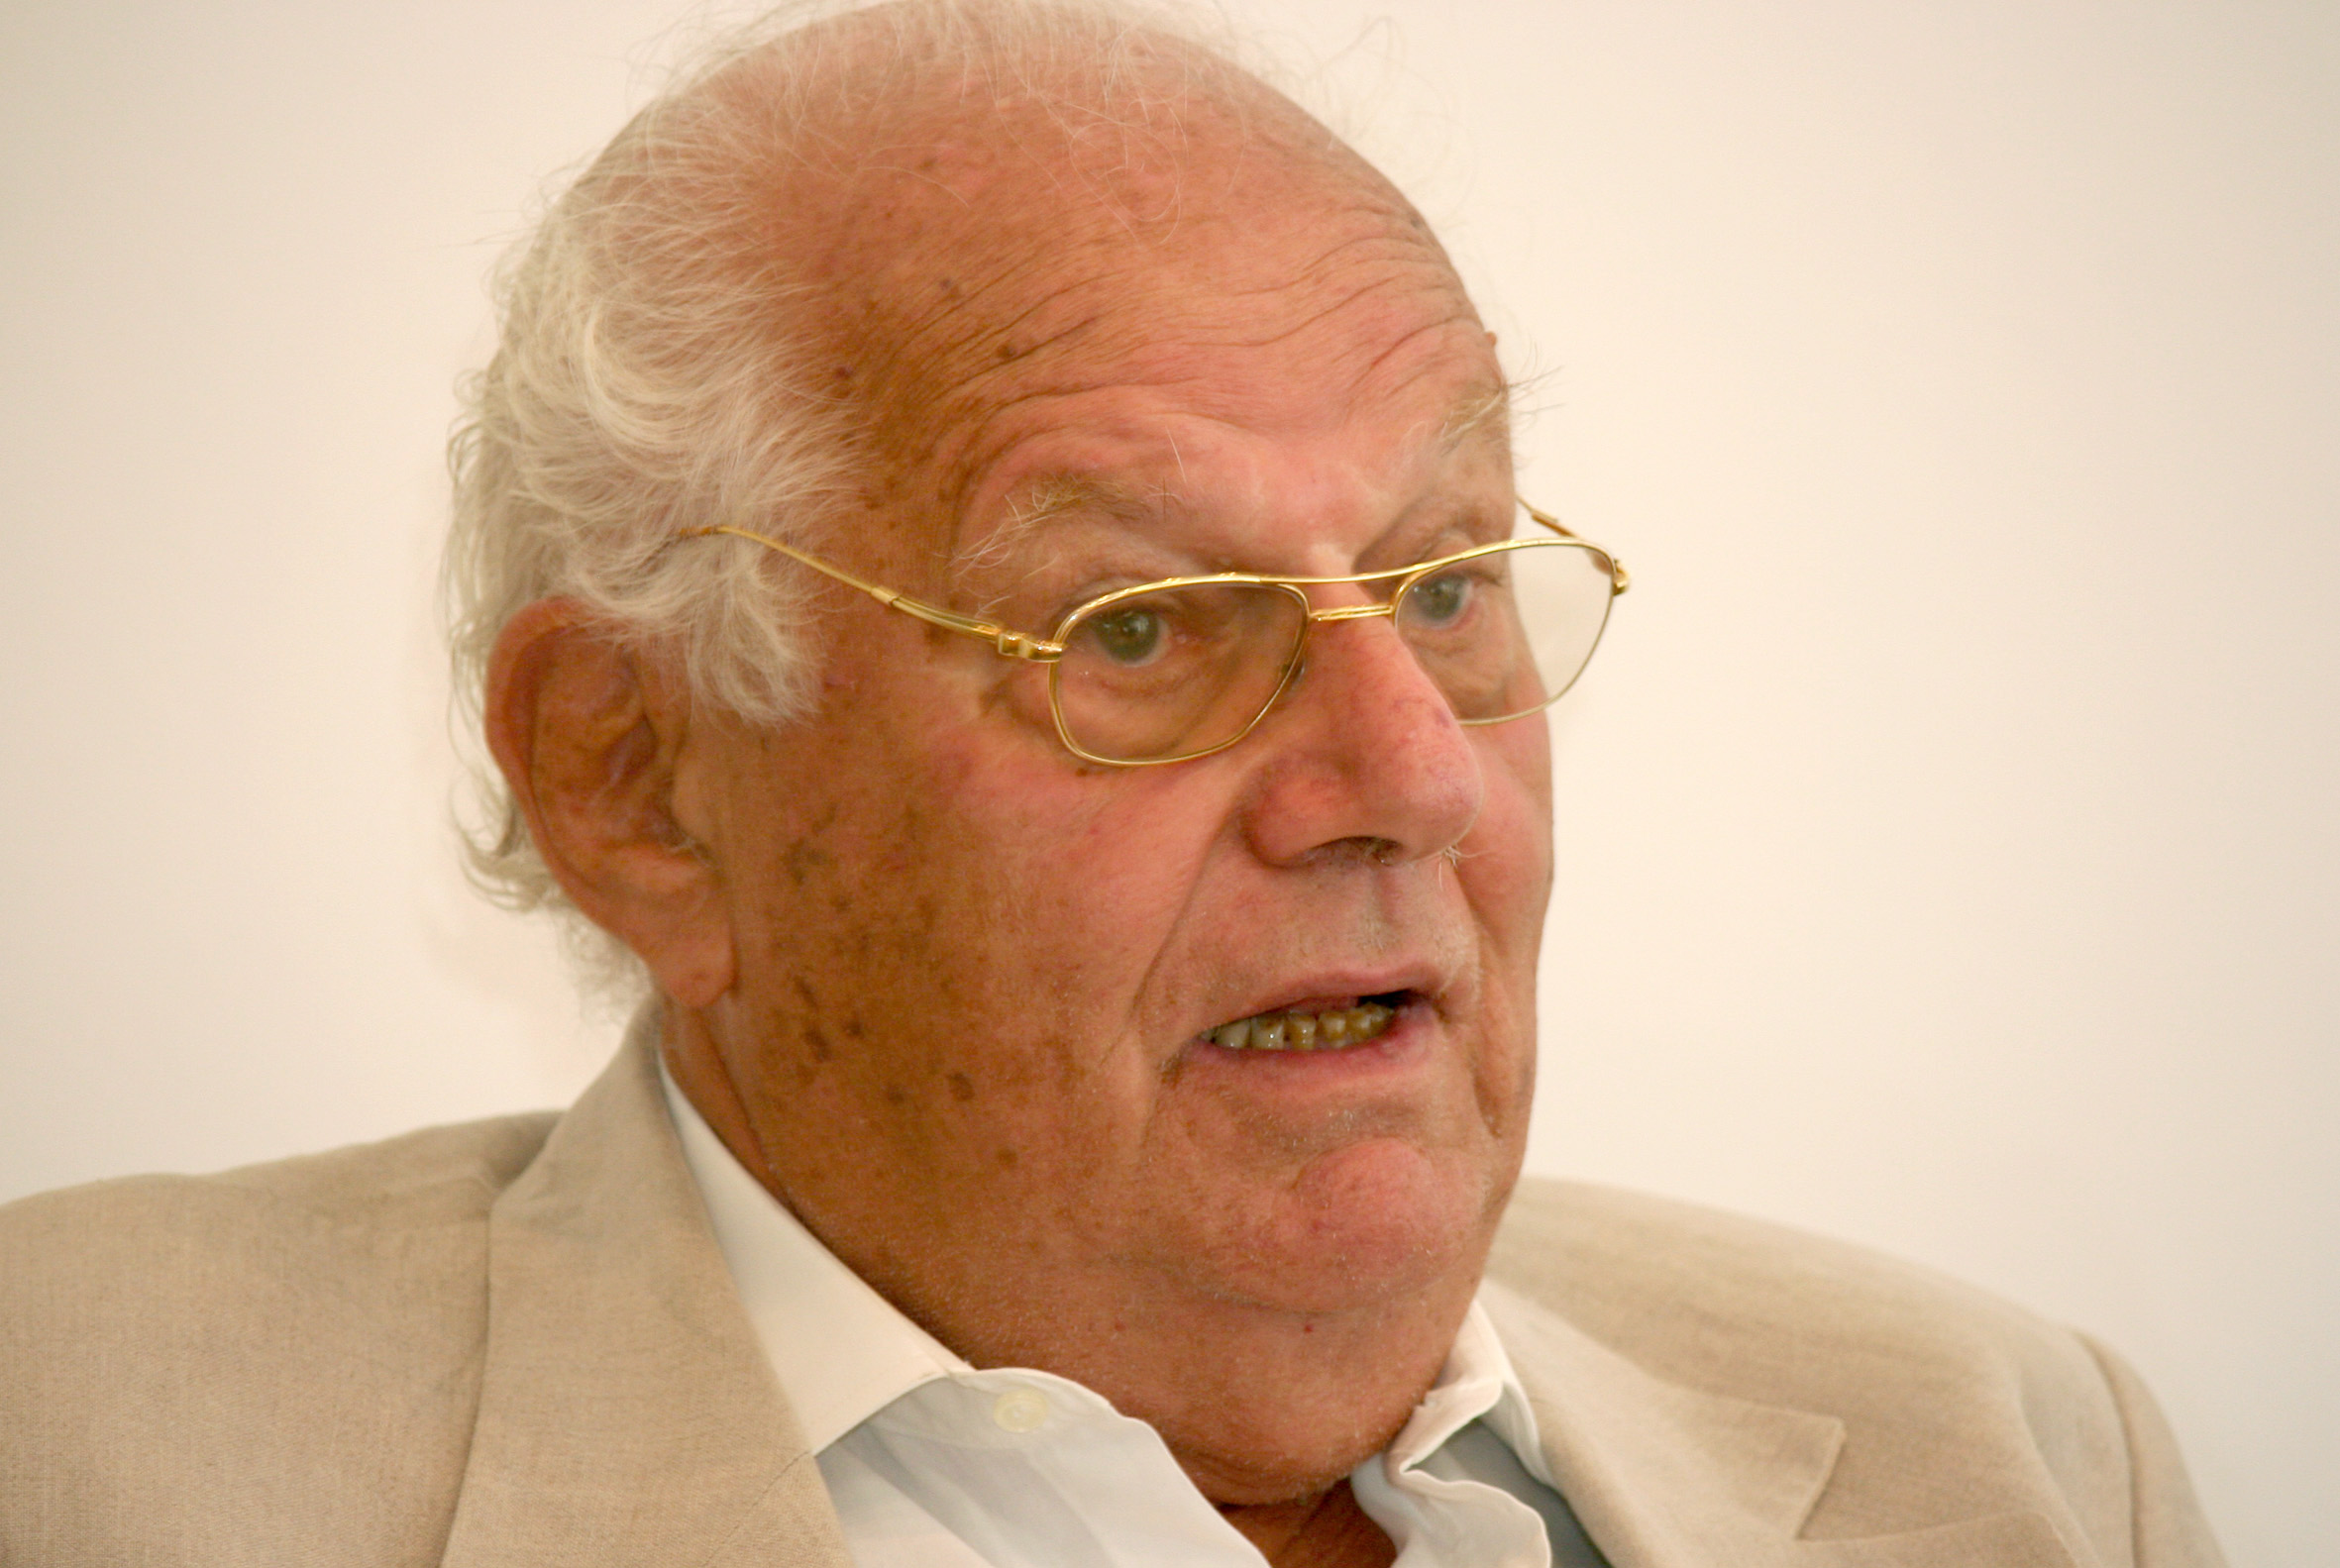 Morre Ignacy Sachs, pensador do ecodesenvolvimento, aos 96 anos